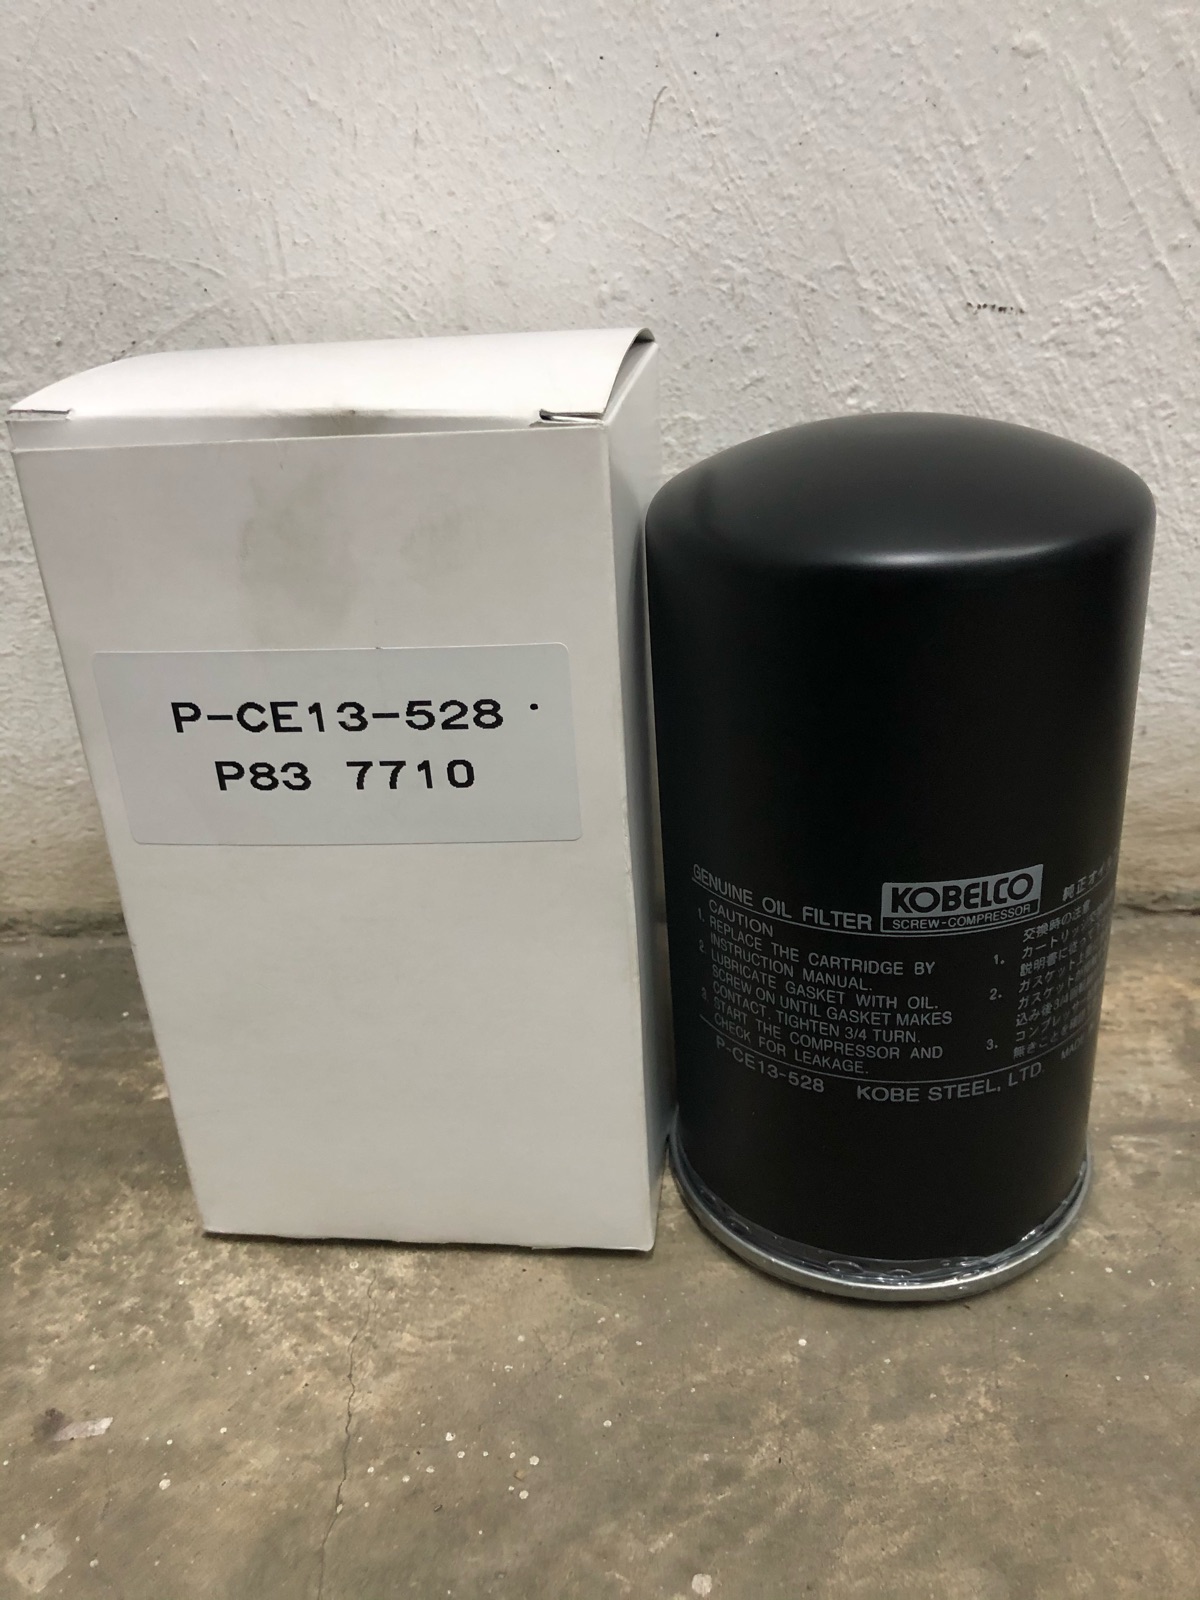 Kobelco Genuine Oil Filter P-CE13-528 